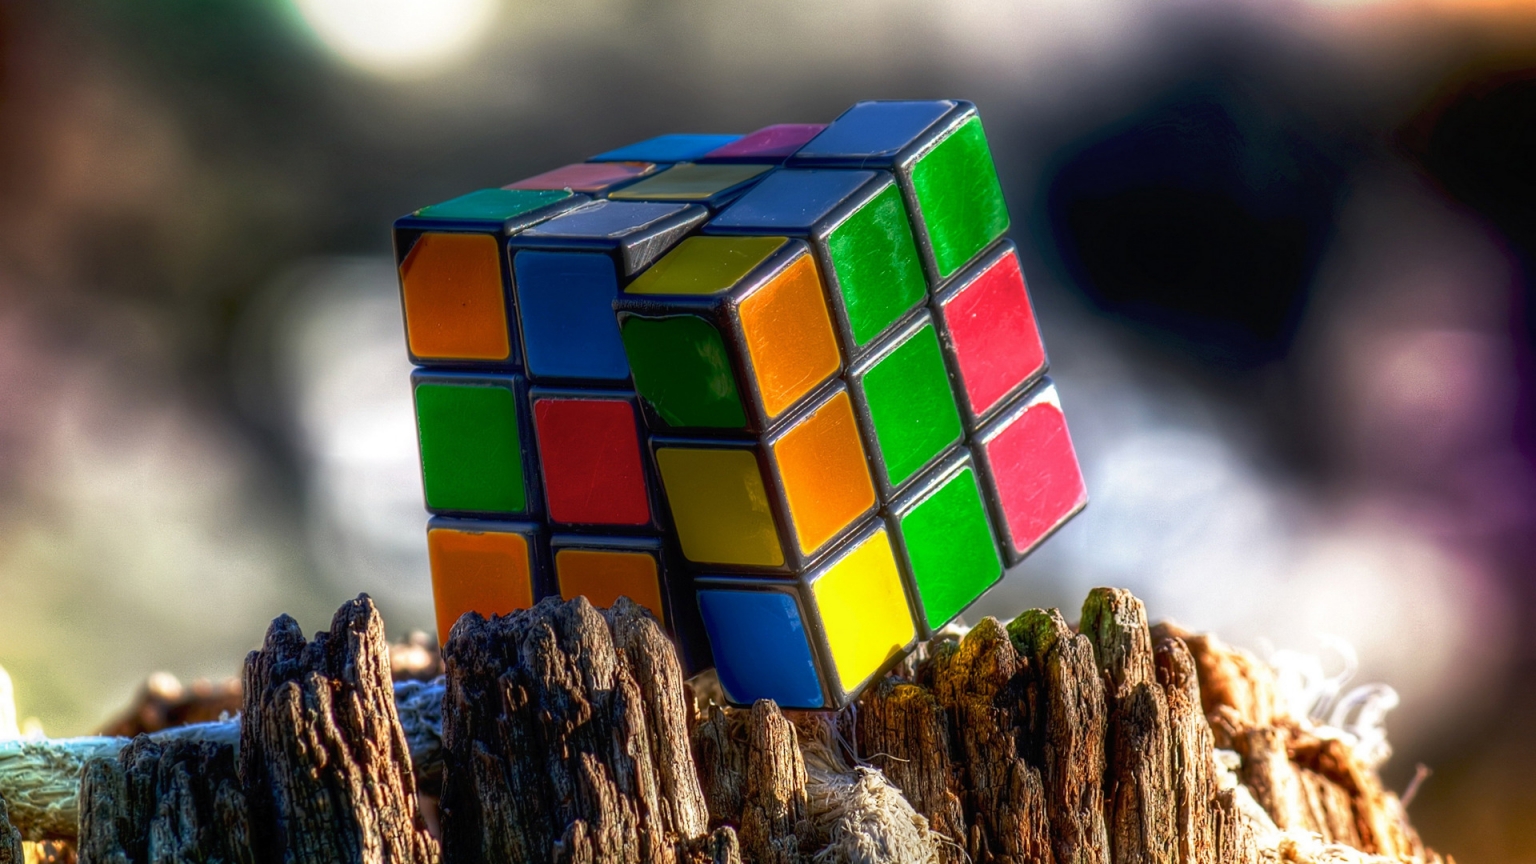 Rubiks Cube for 1536 x 864 HDTV resolution